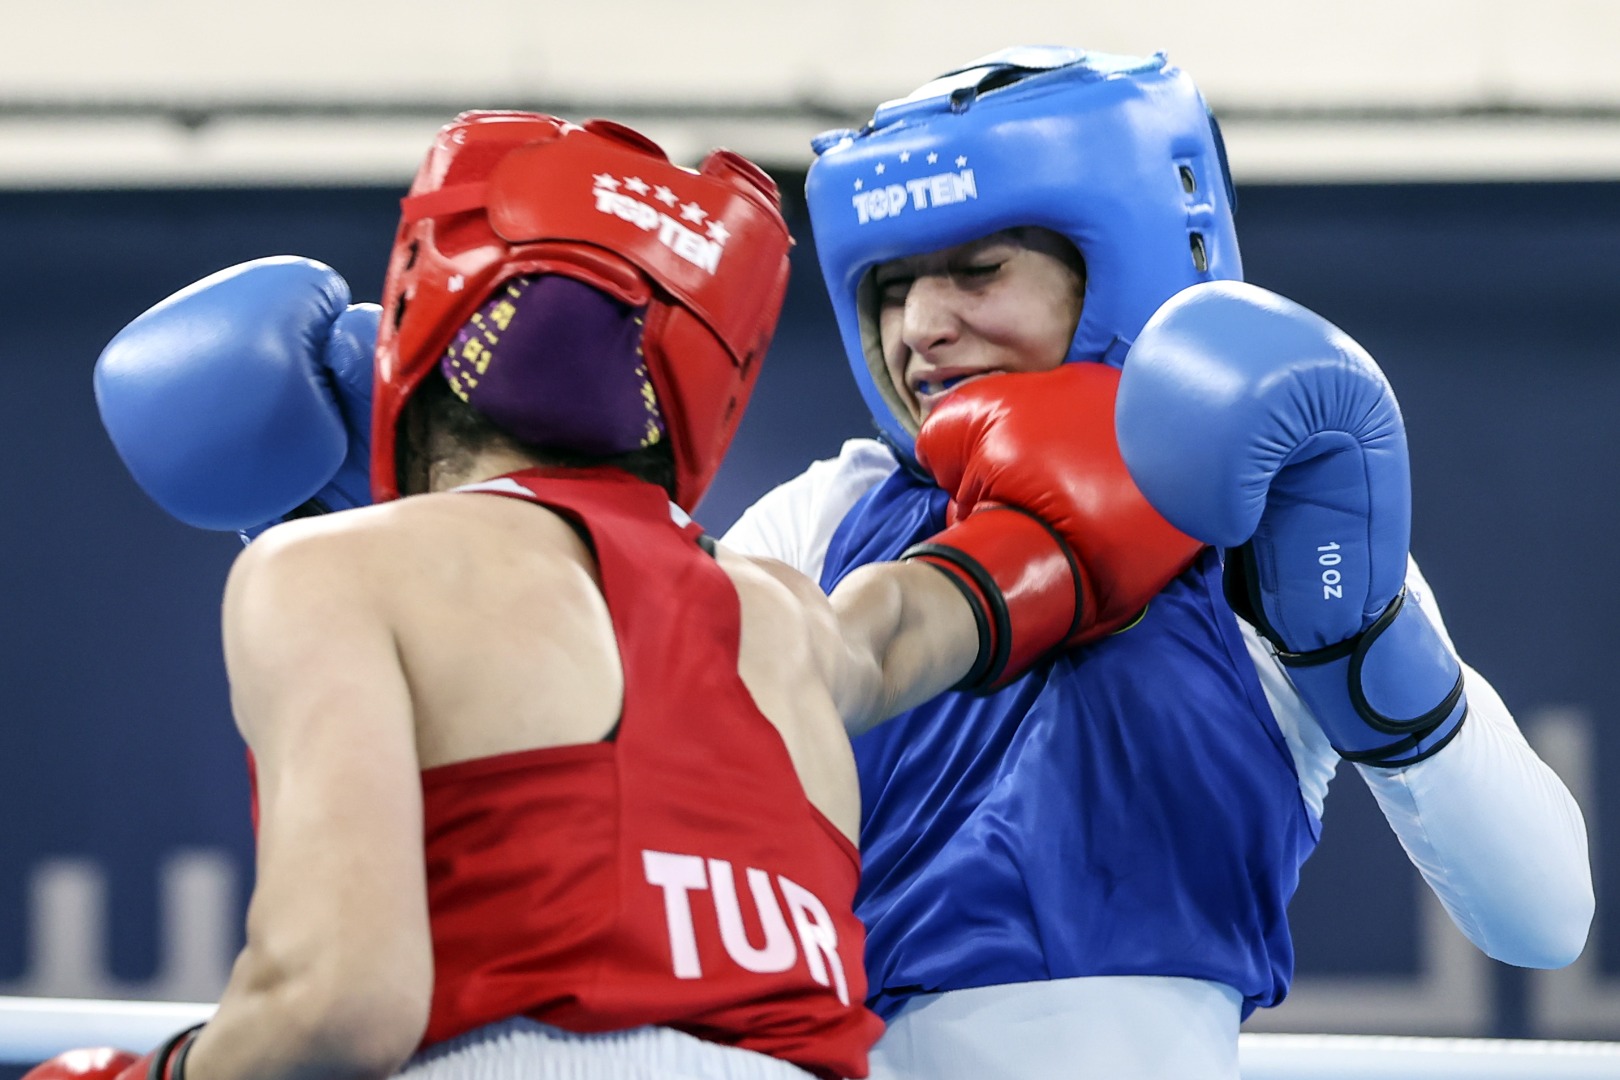 Milli boksör Hatice Akbaş Mısırlı rakibini devirdi 7